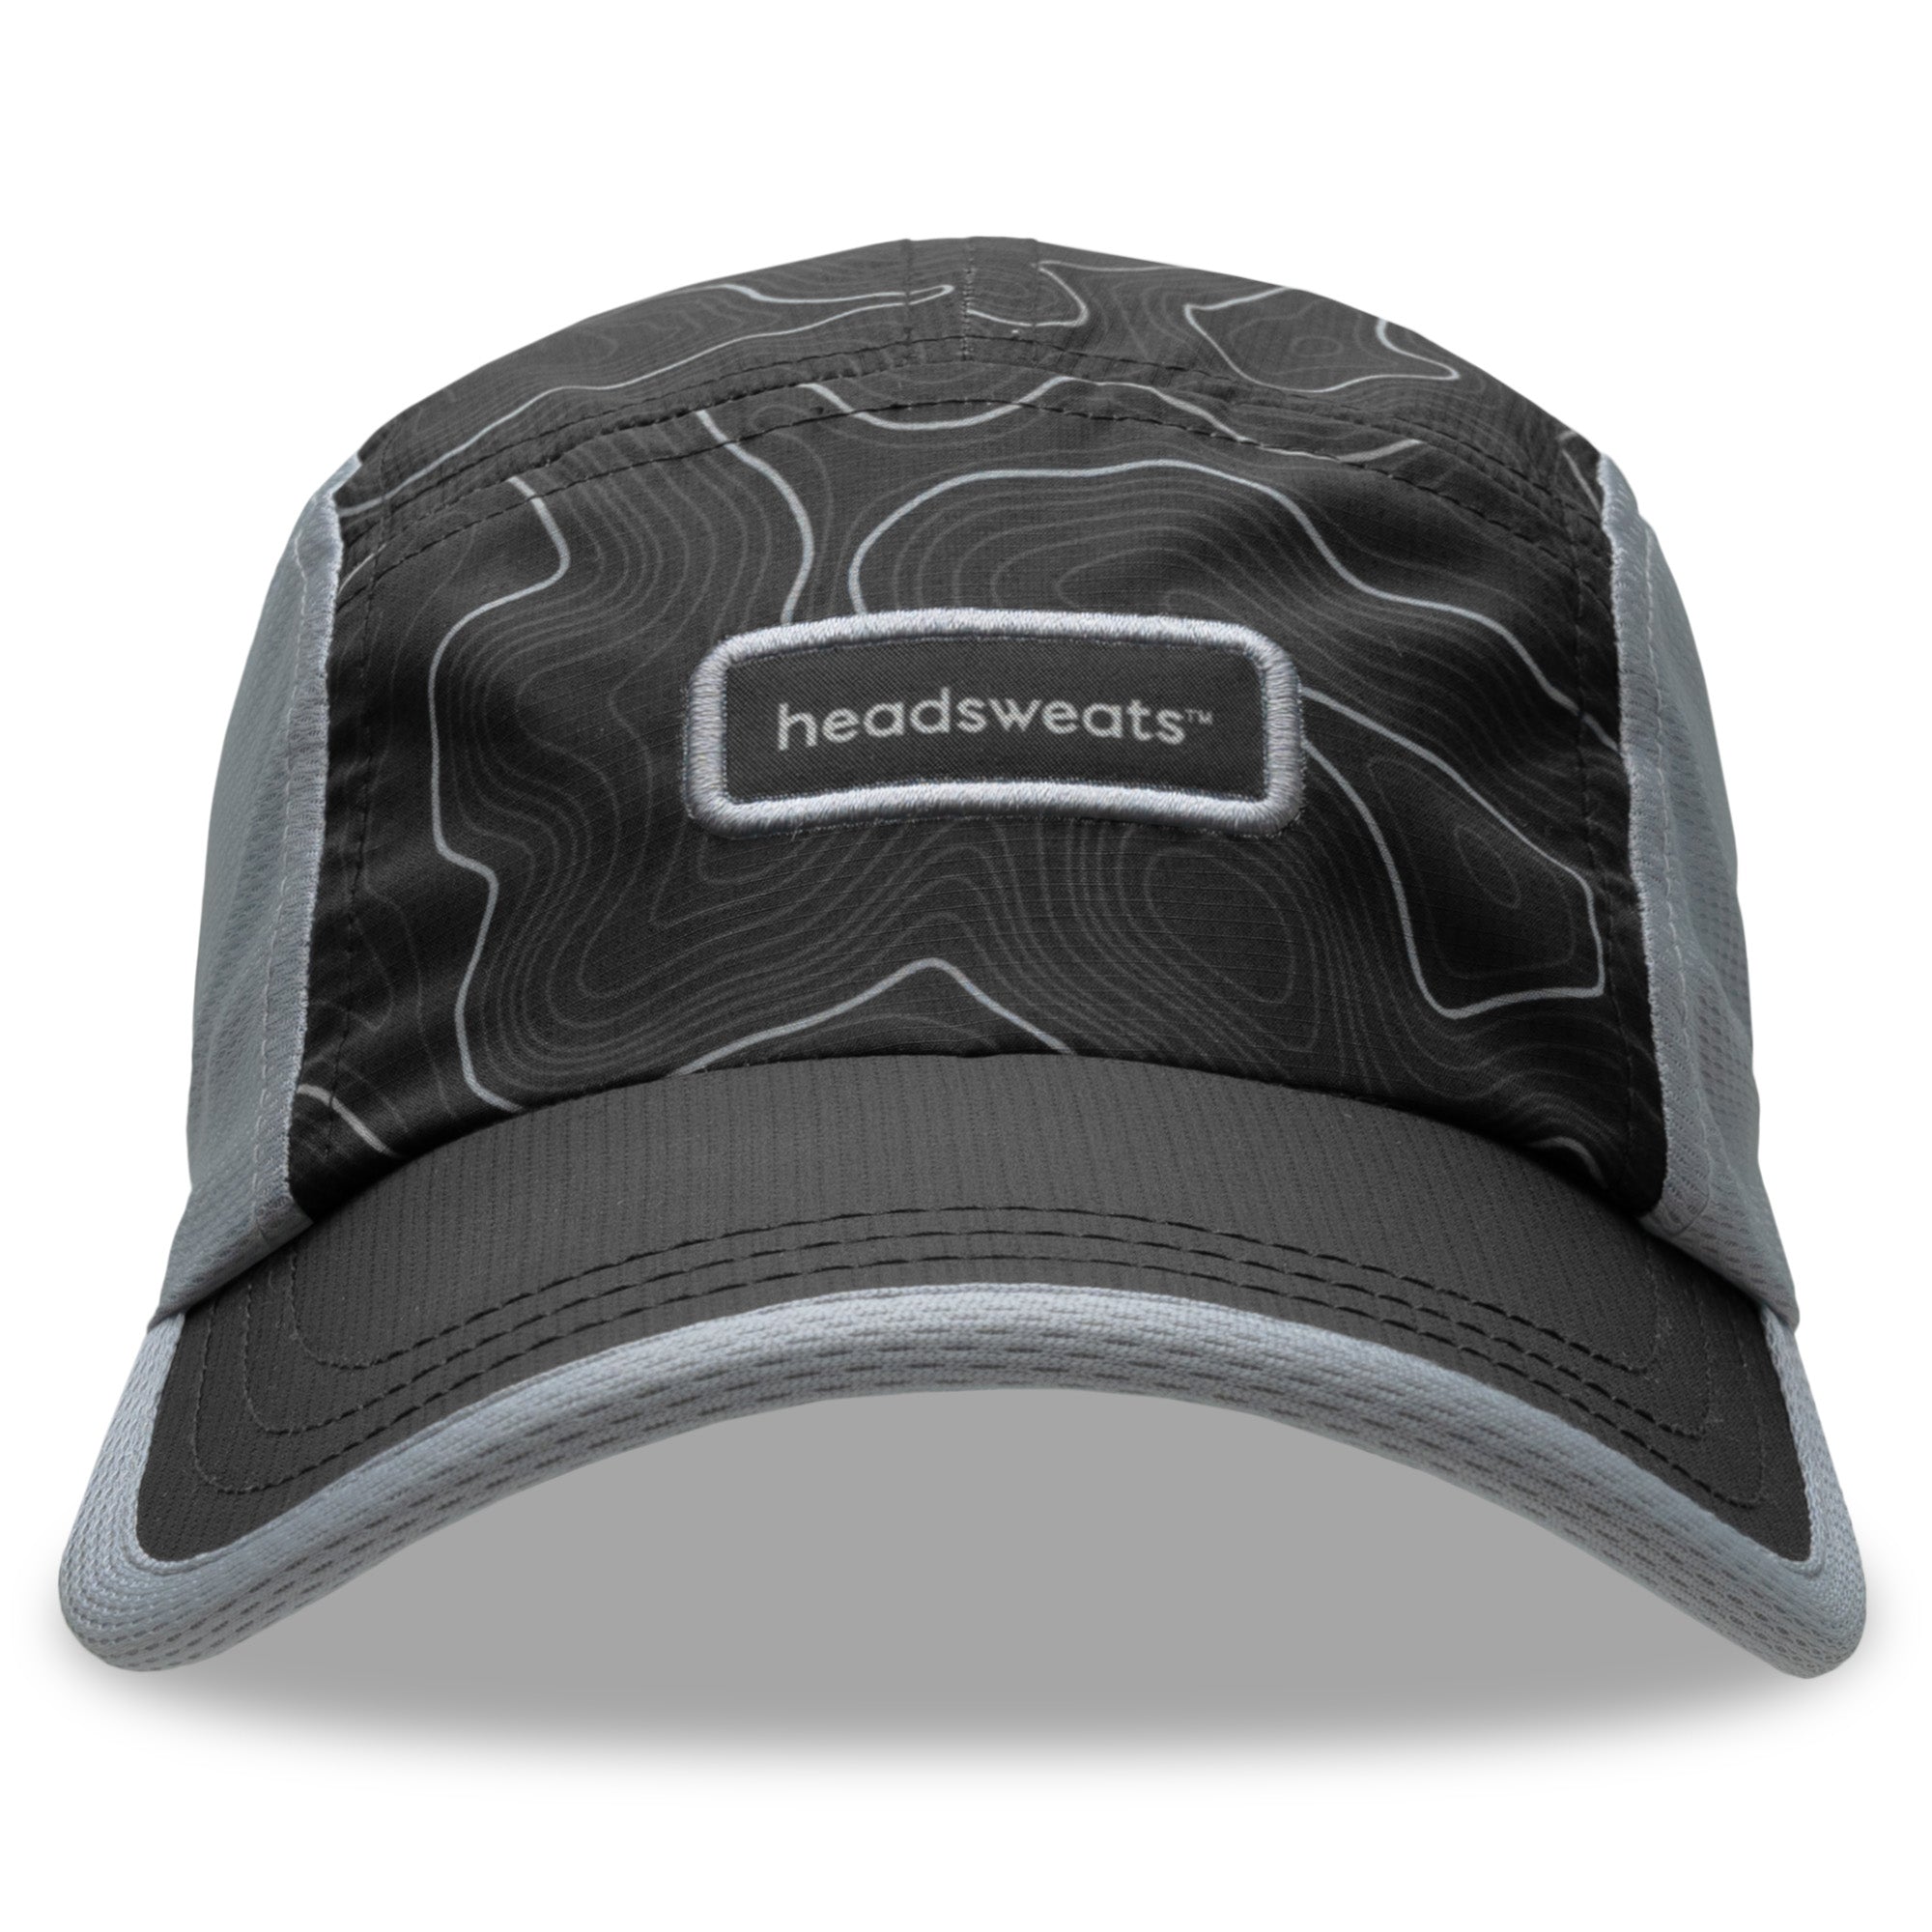 Headsweats Trucker Hat - Gray